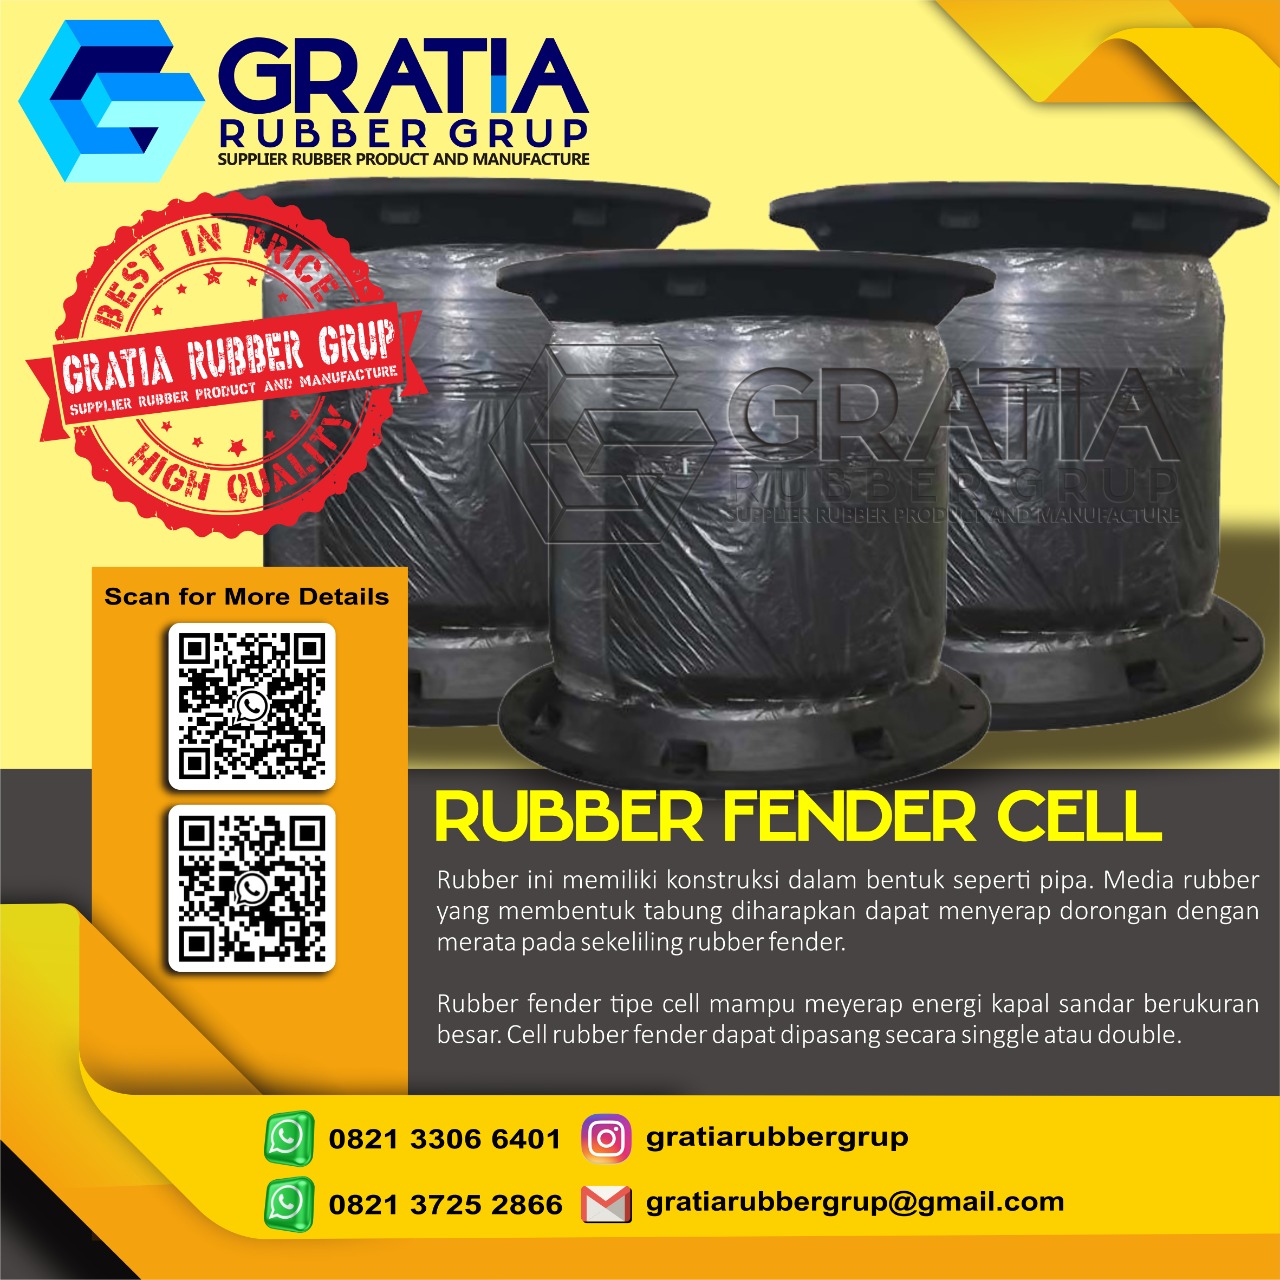 Distributor Rubber Fender Murah Dan Berkualitas  Melayani Pengiriman Ke Pariaman Sumatera Barat Hub 0821 3306 0461